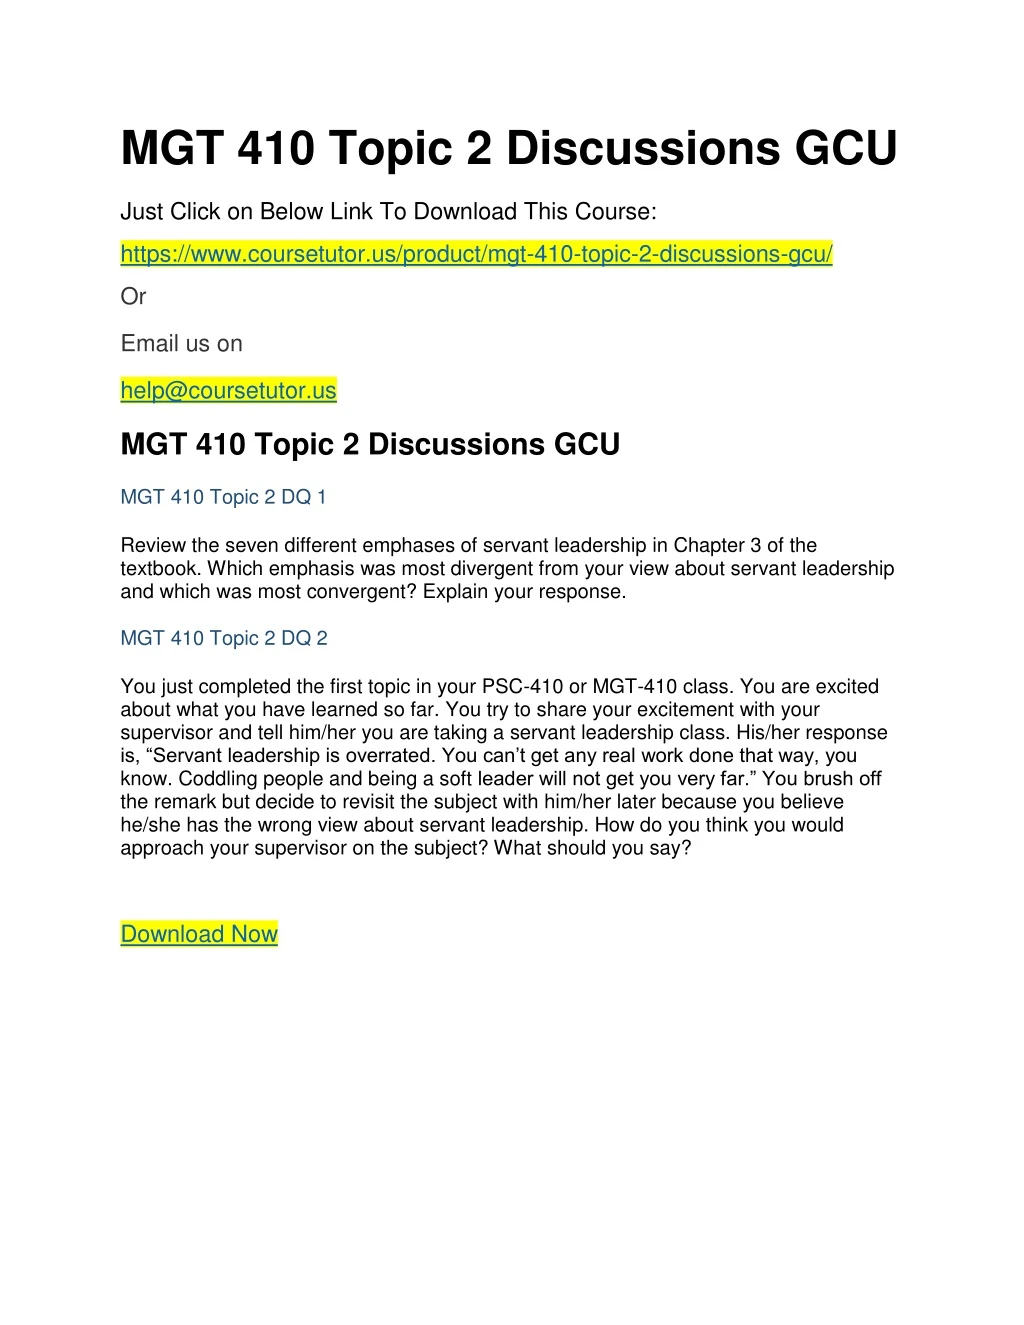 mgt 410 topic 2 discussions gcu